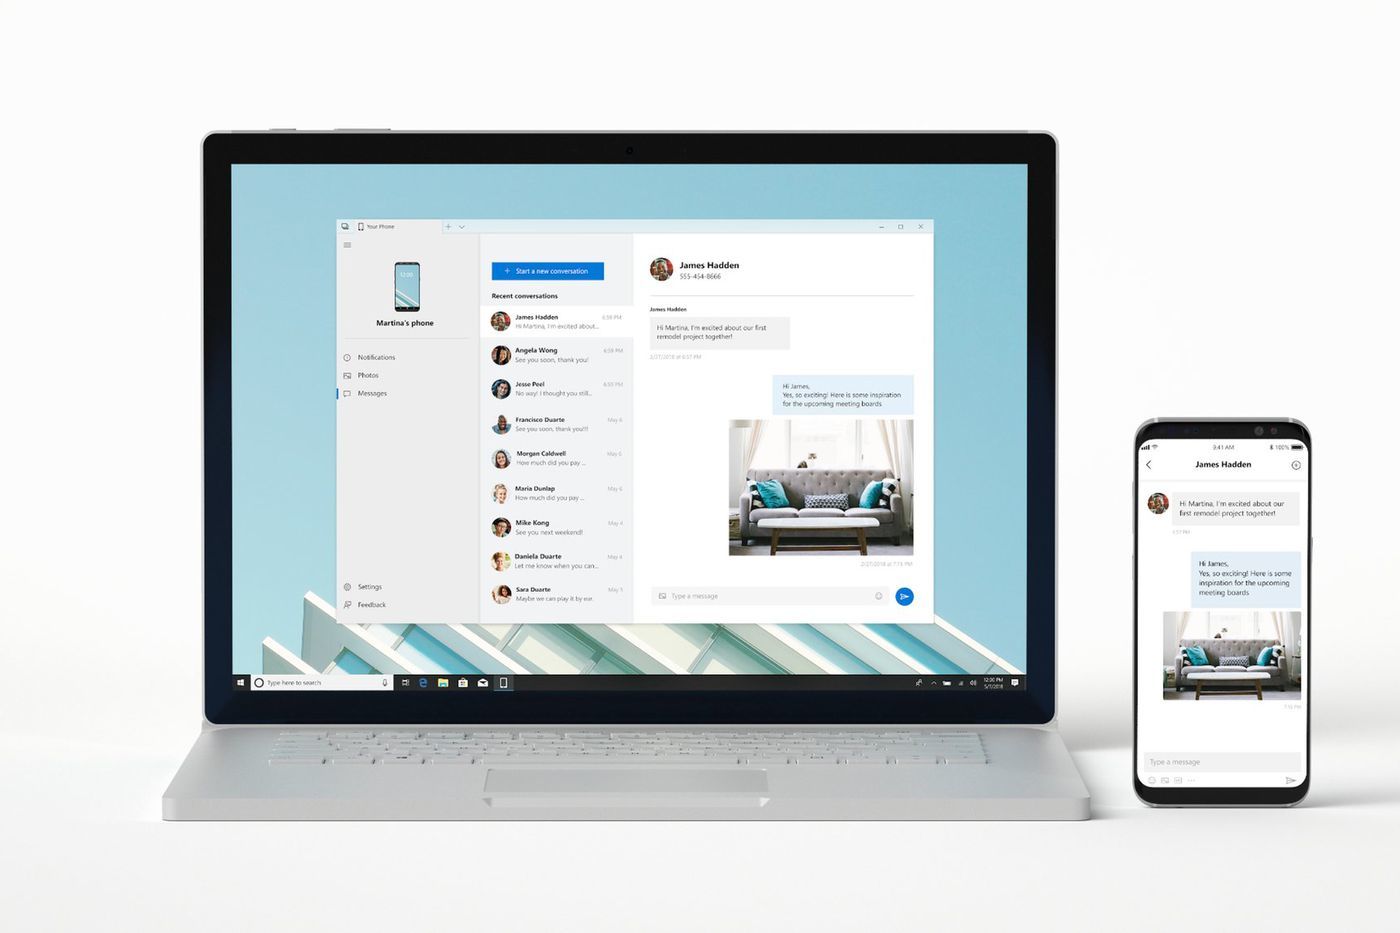 Windows 10 permettra bientôt le transfert sans fil de fichiers avec des smartphones Samsung